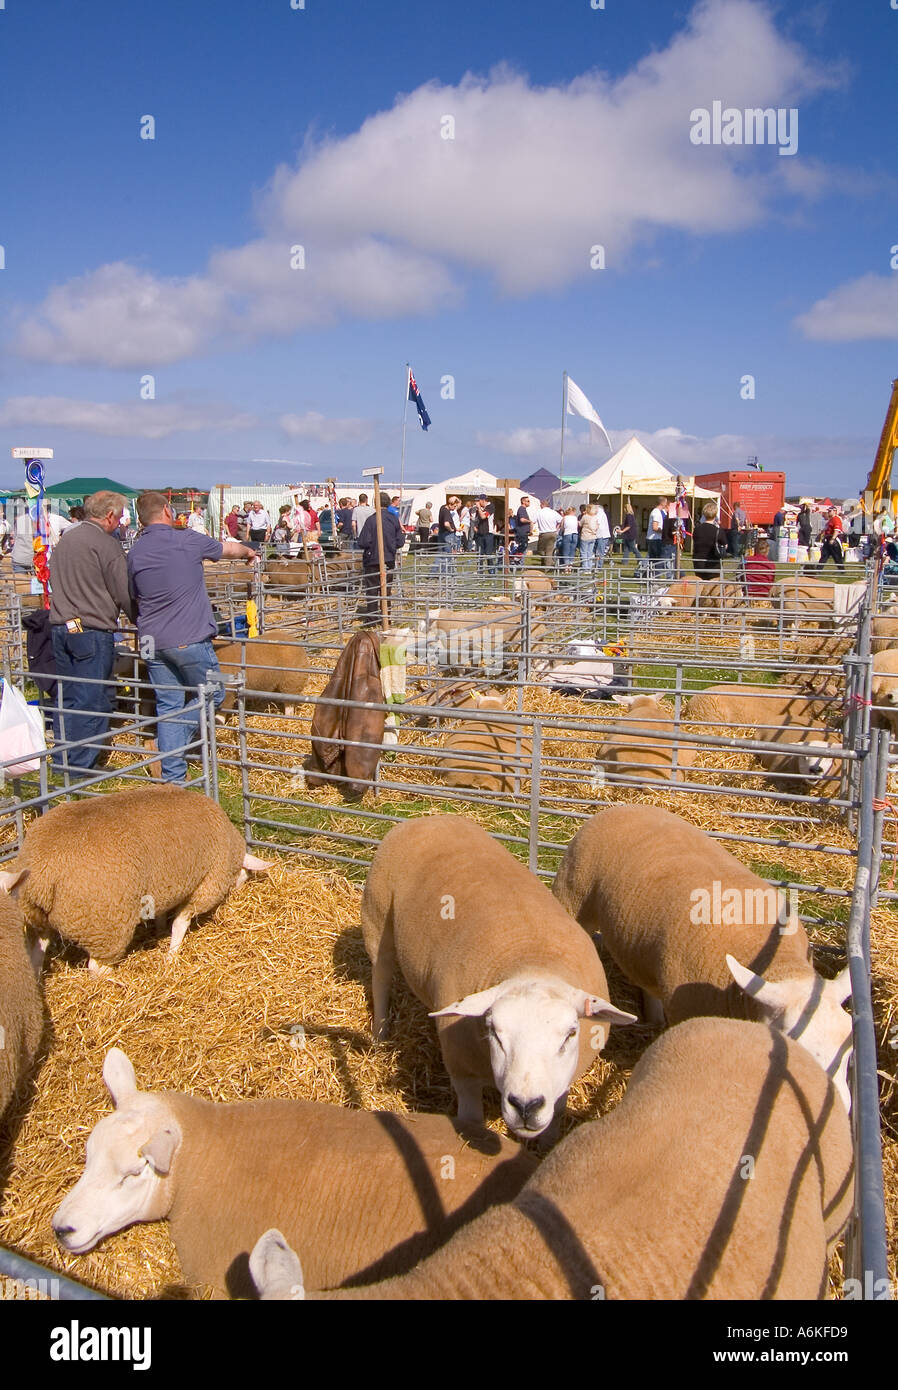 dh County Show KIRKWALL ORKNEY Display von Texel gimmer ewe Schafe in Viehhaltung Pen Show Boden Landwirtschaft Bauernhof Stifte Herde uk Stockfoto